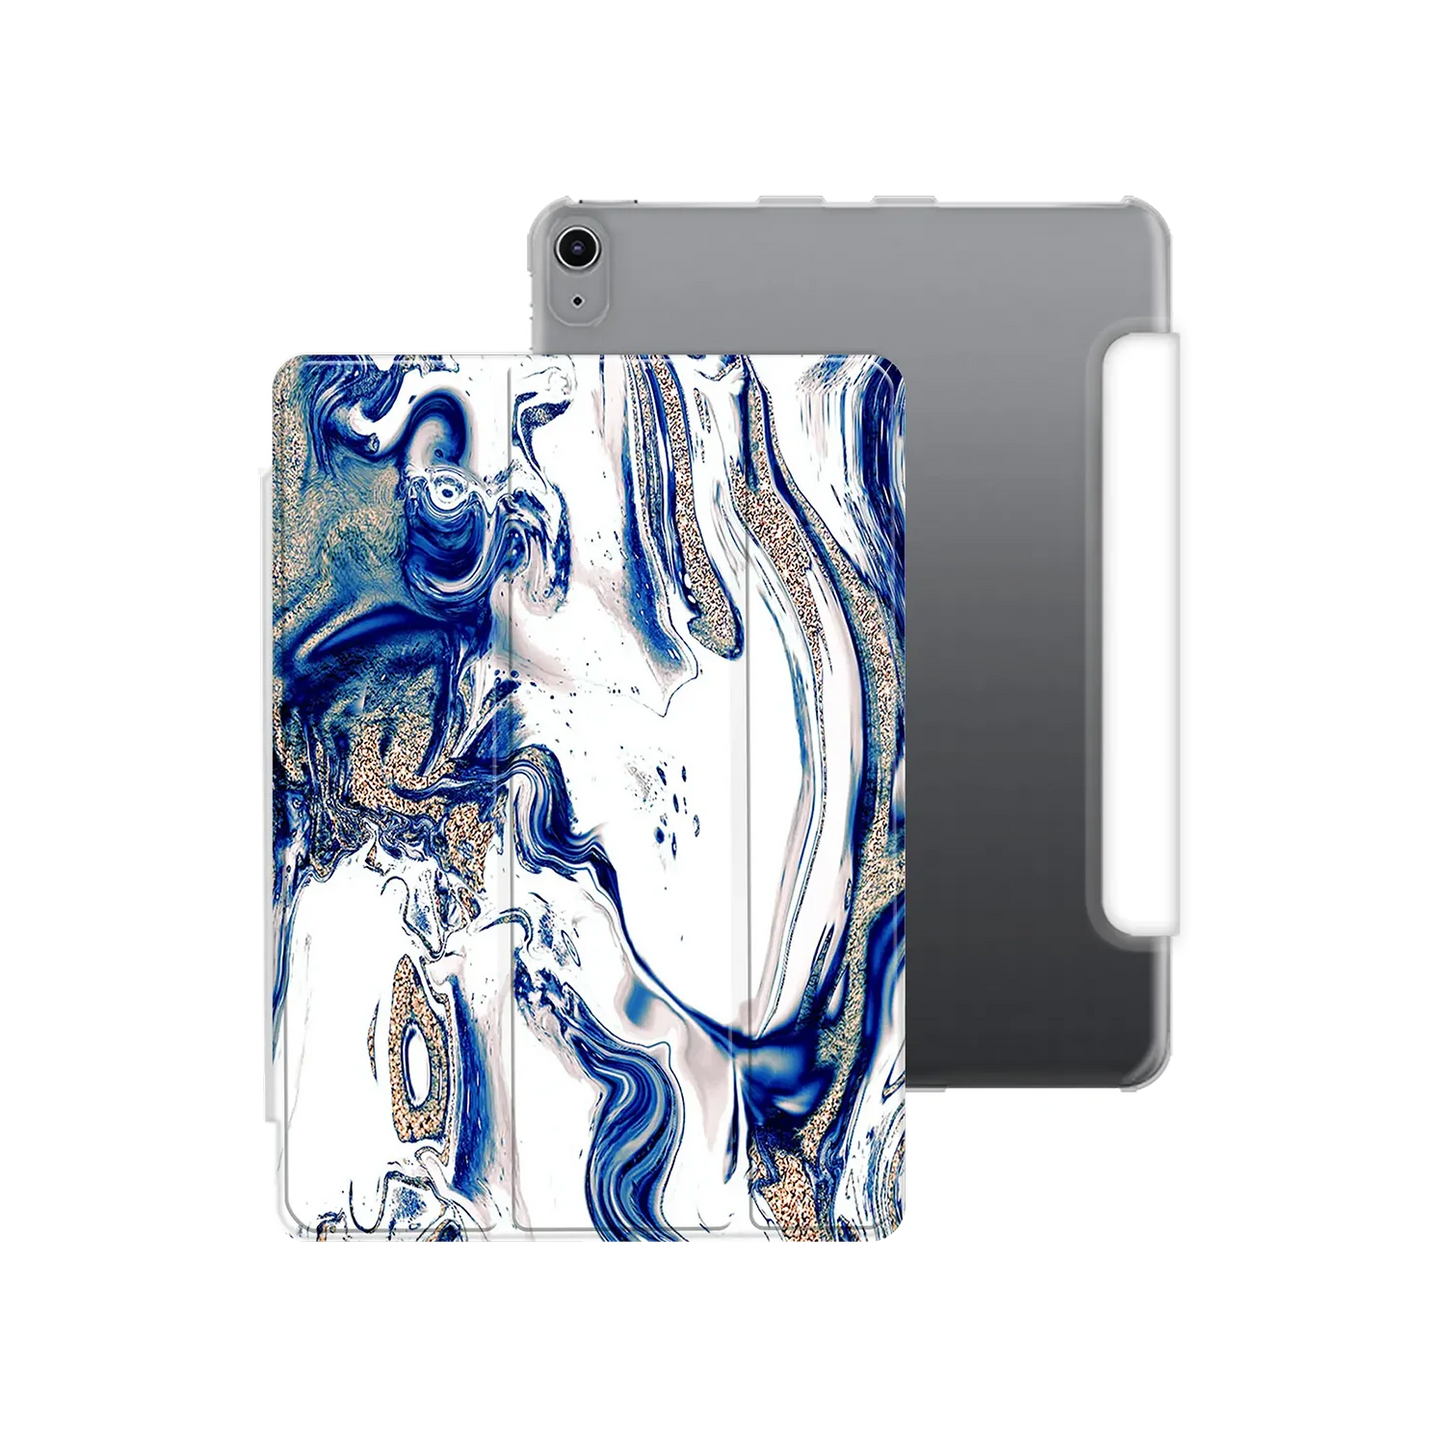 Goteo de mármol - iPad personalizado carcasa